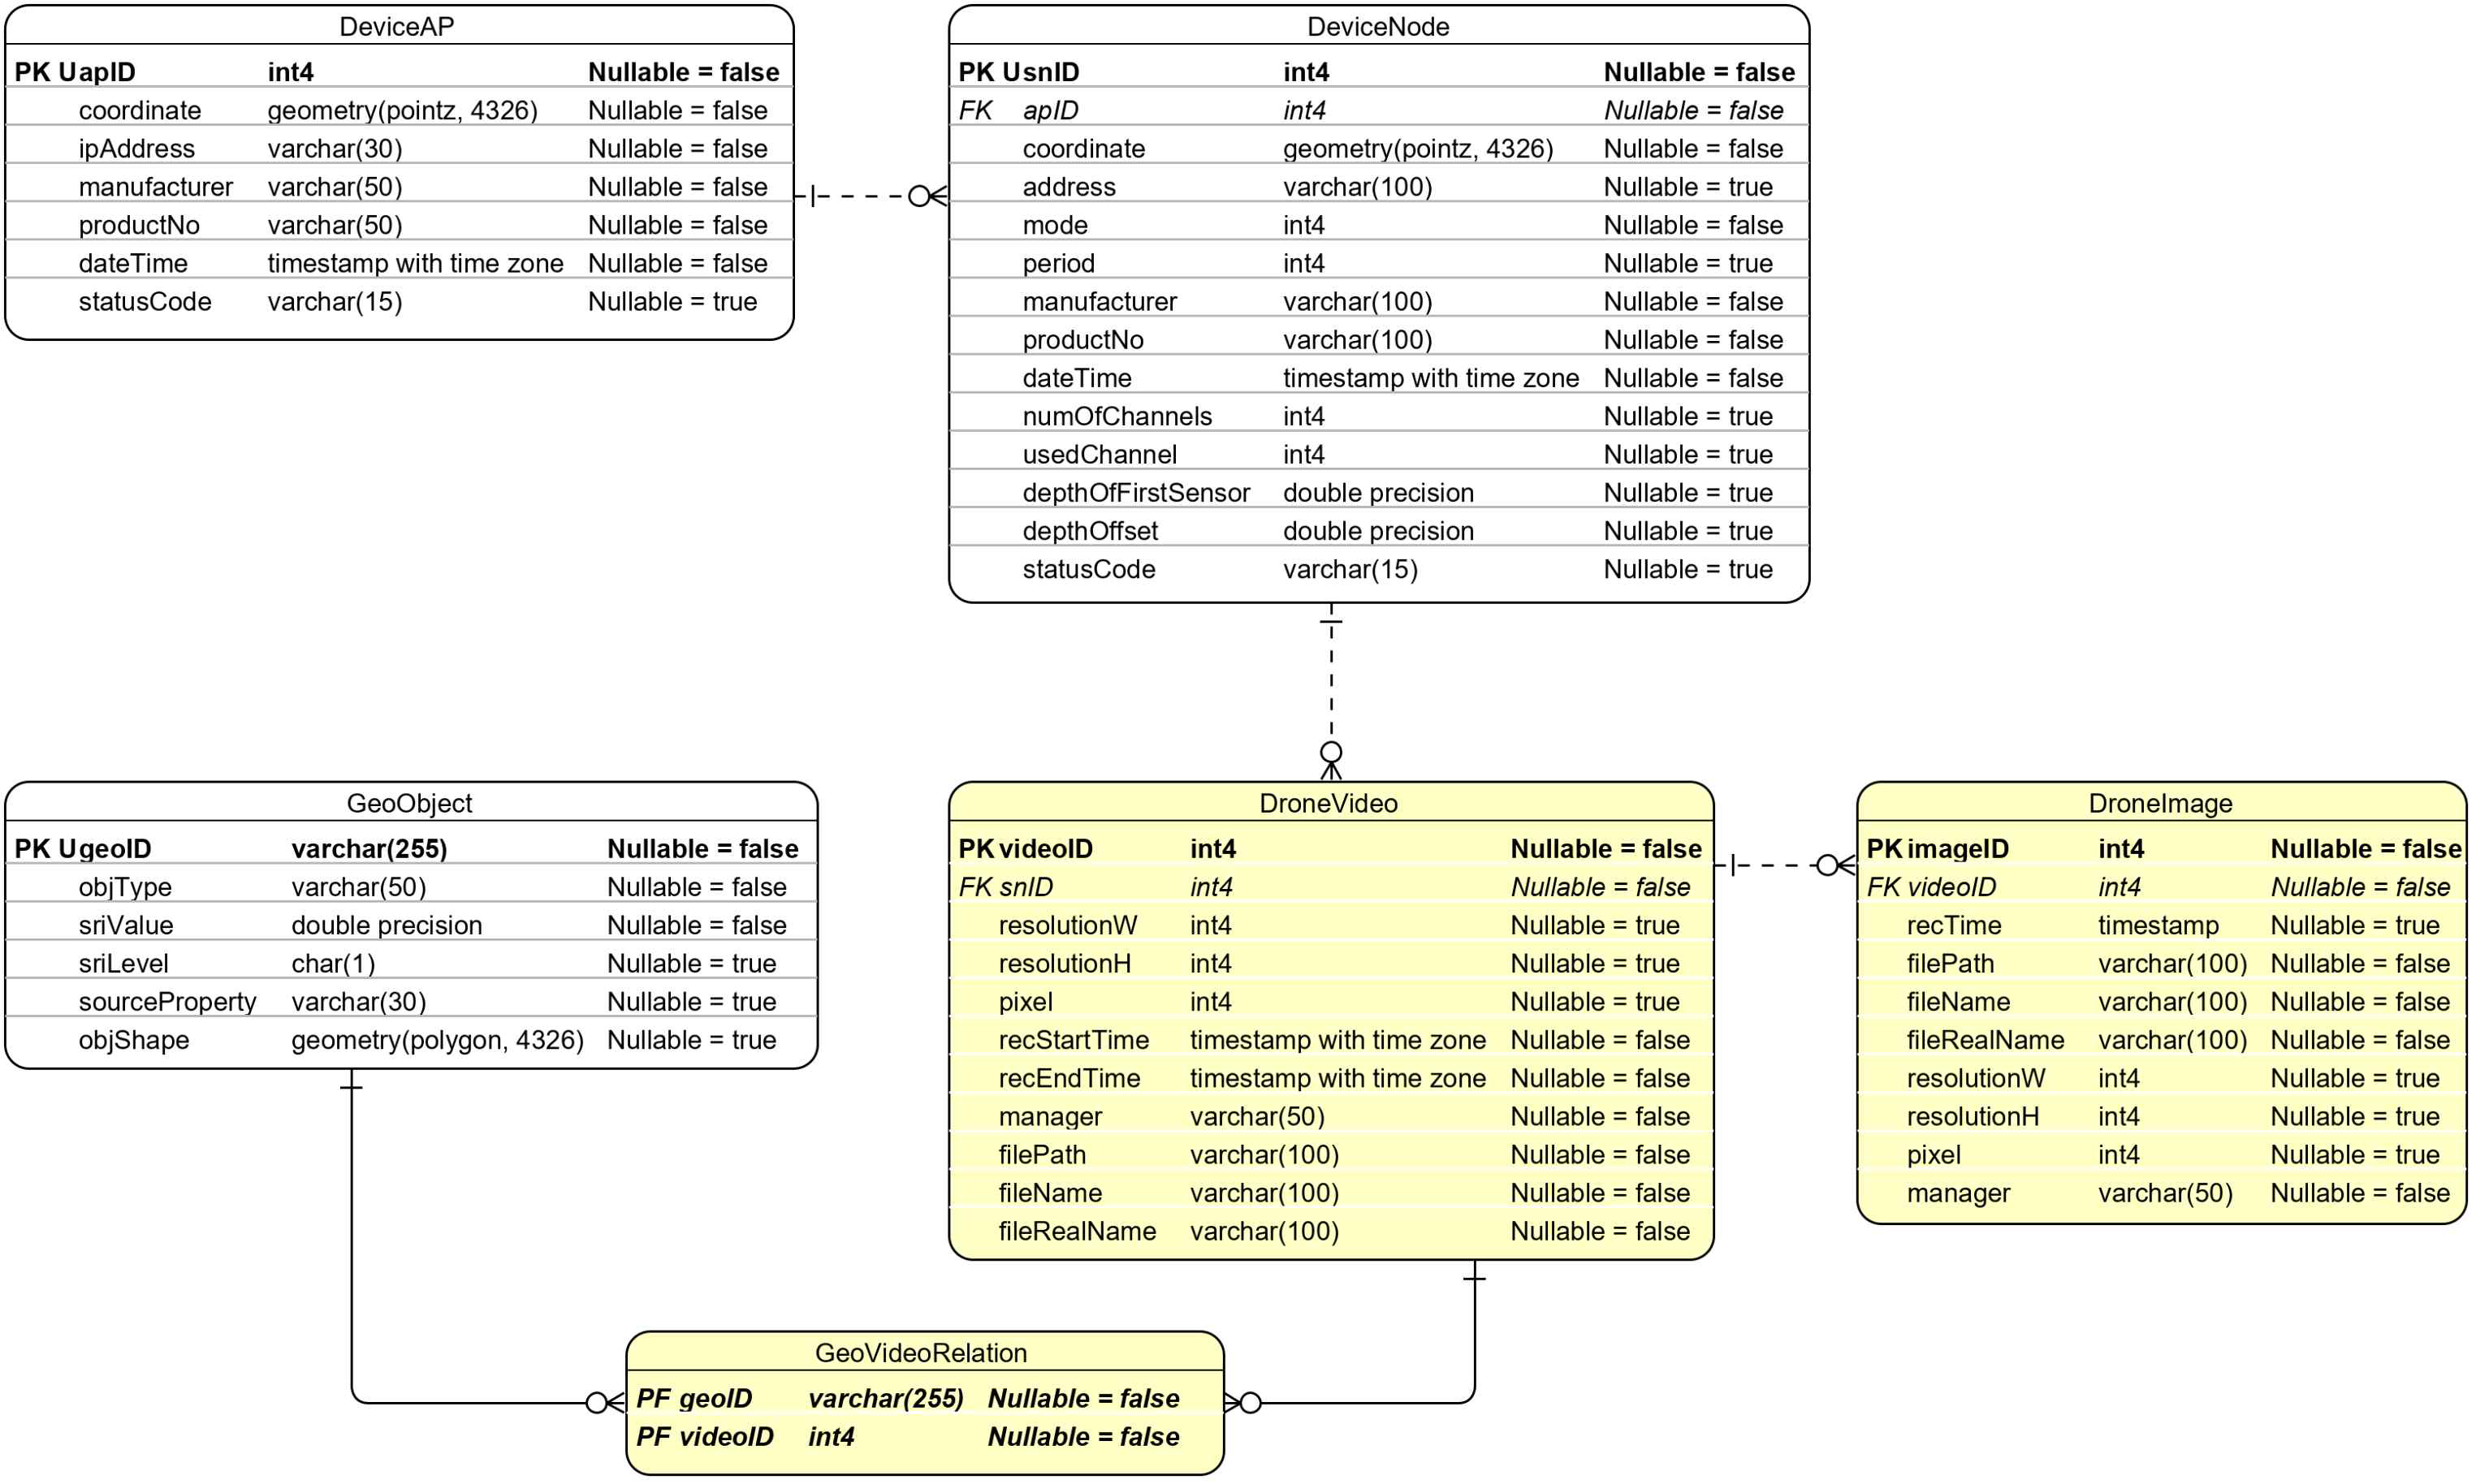 구조물 관리 플랫폼에서 웹 기반 GUI를 통하여 데이터를 관리하기 위한 DB 스키마